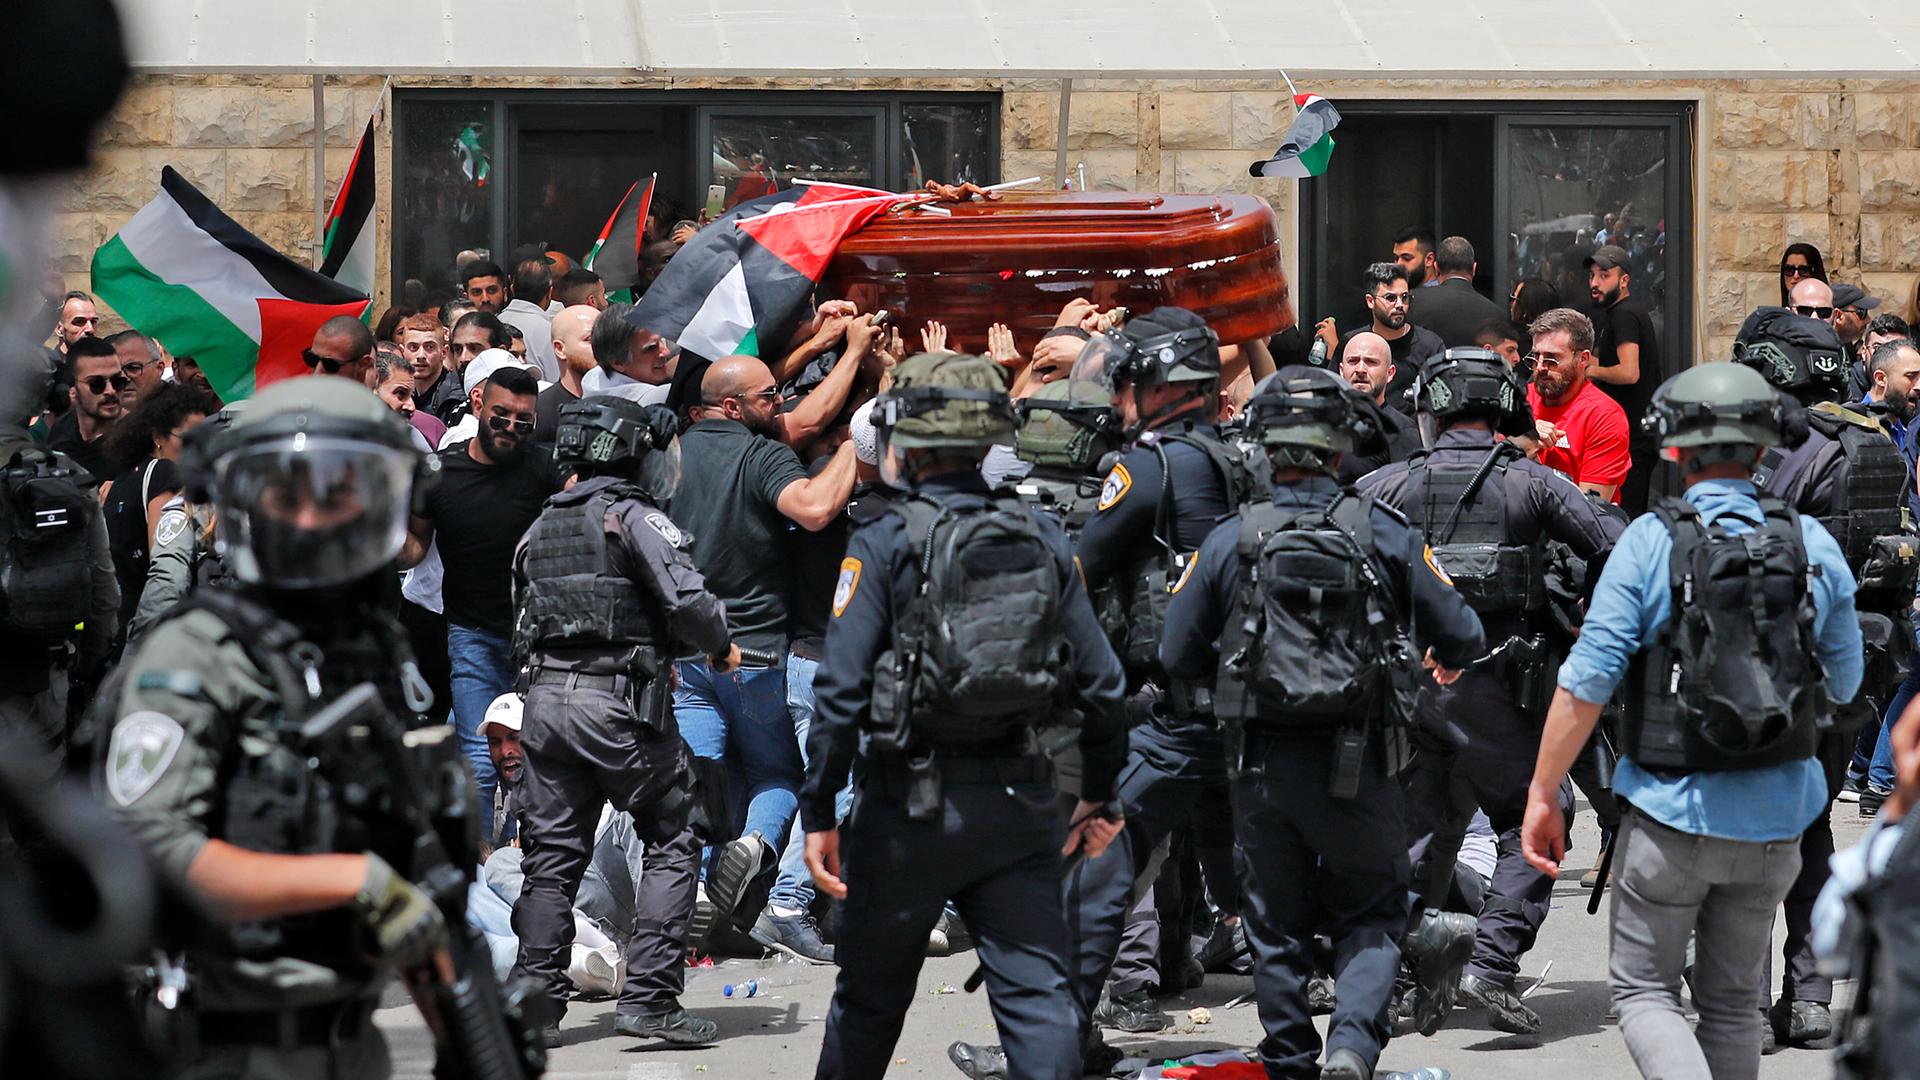 Männer, die Palästinenser-Flaggen in der Hand haben, tragen einen Sarg. Im Vordergrund sieht man Sicherheitskräfte.